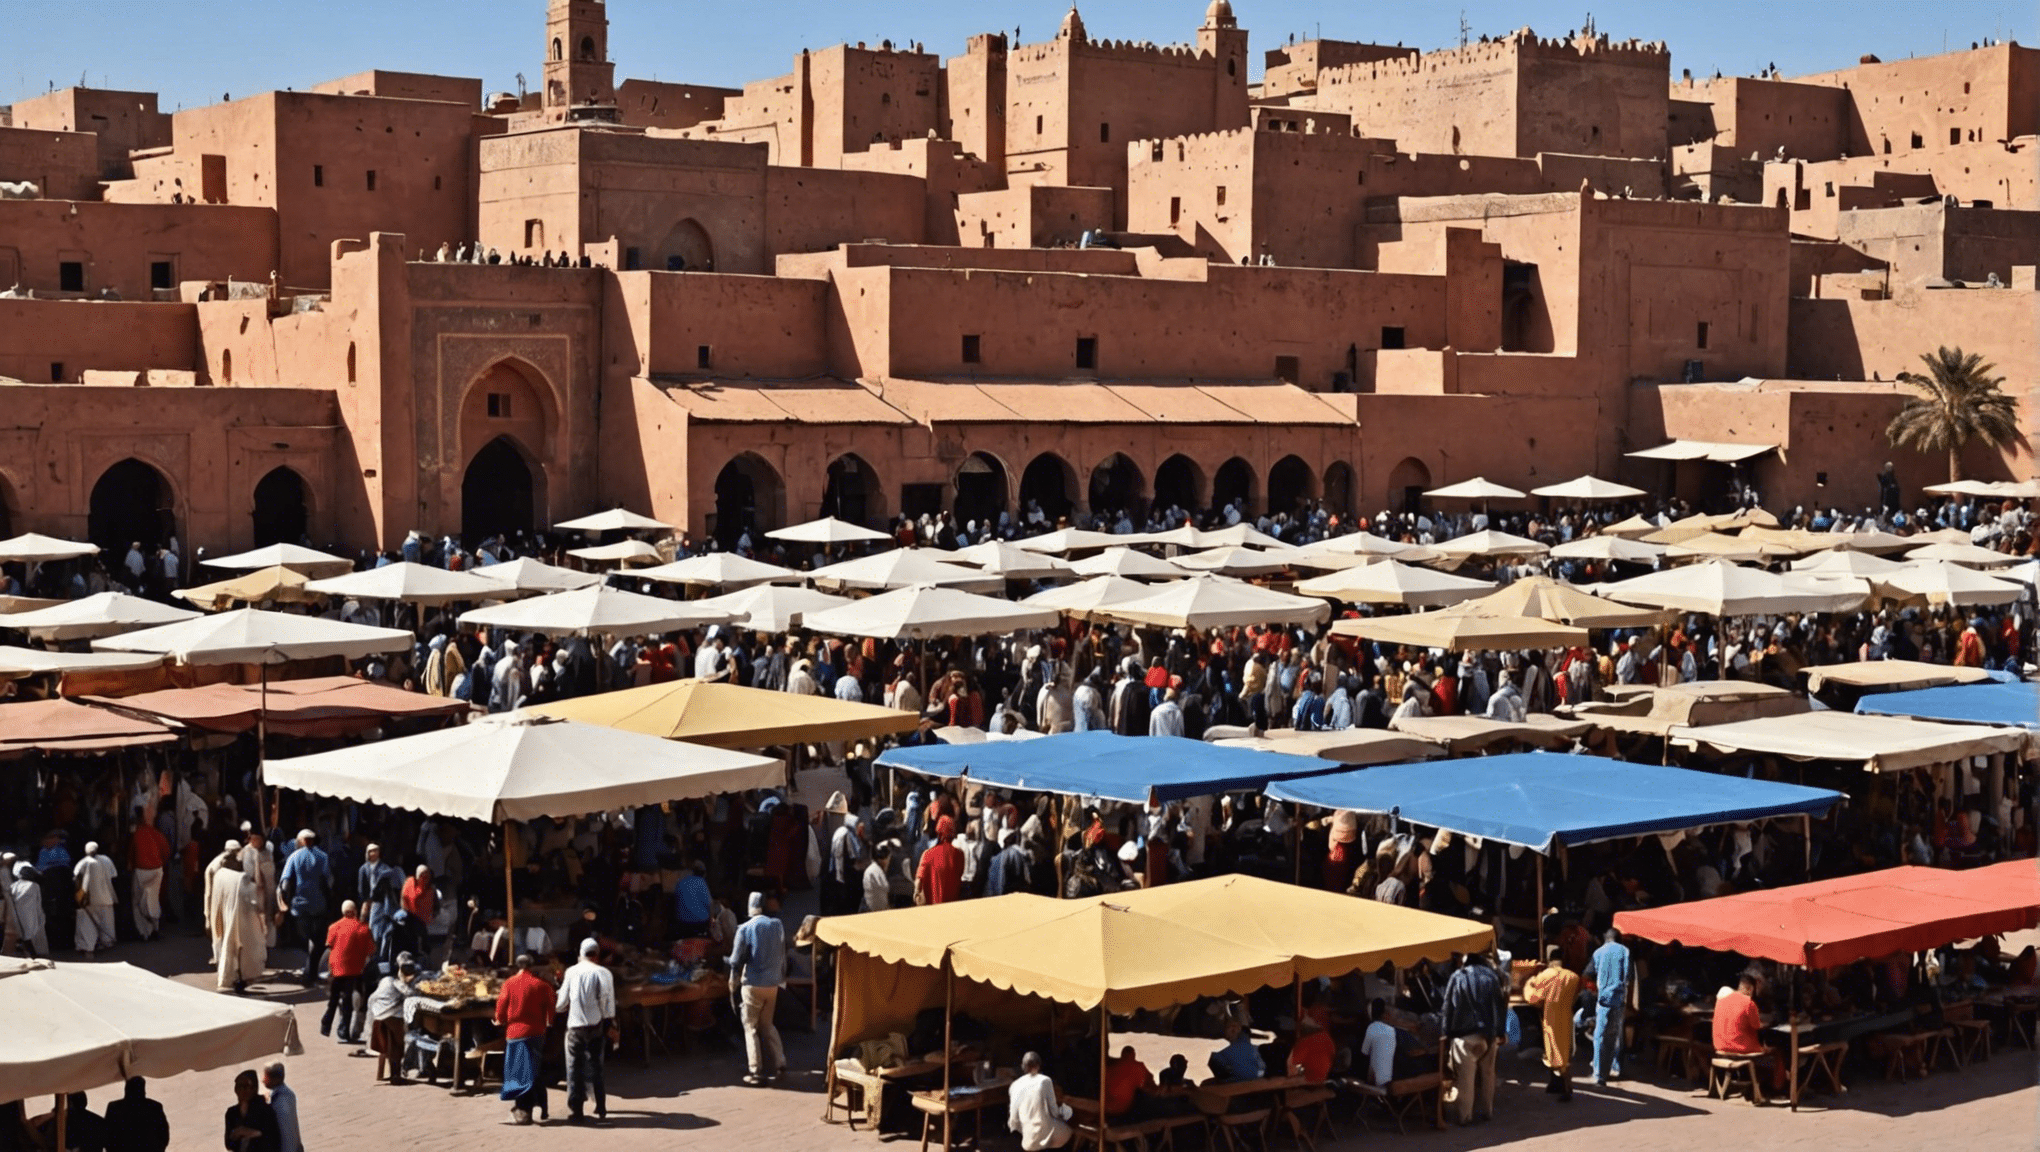 Descubra qué tan caliente se pone Marrakech en mayo con nuestra guía completa. planifique su viaje con confianza y disfrute del clima perfecto en esta impresionante ciudad.